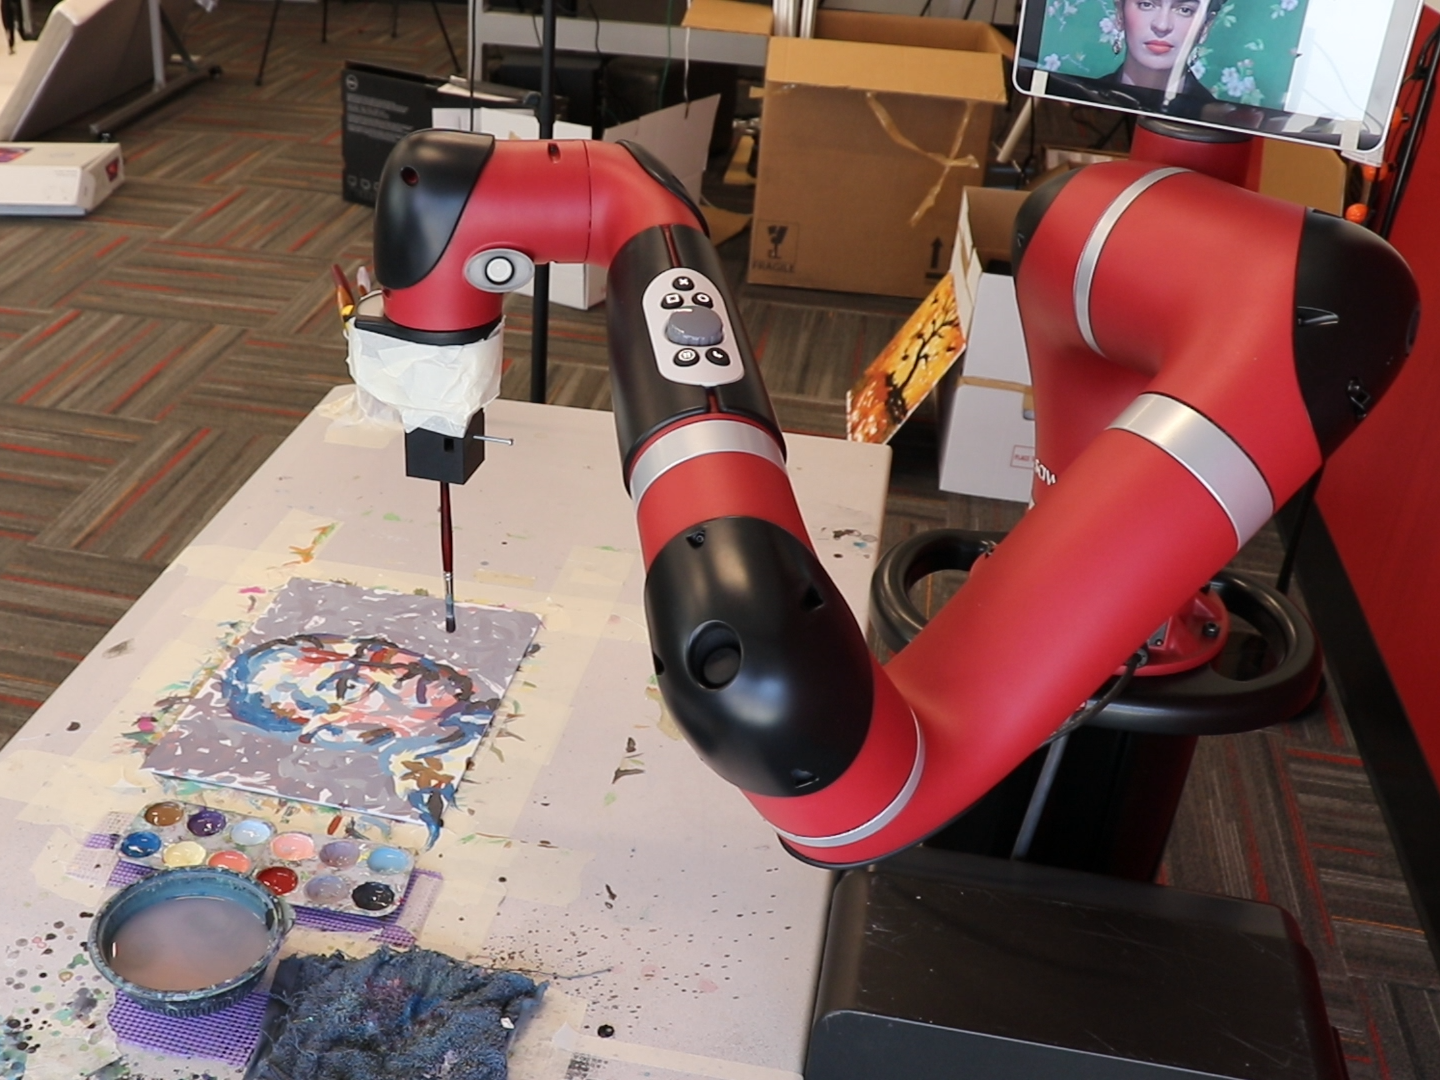 FRIDA, a collaborative robotics and art project at Carnegie Mellon University